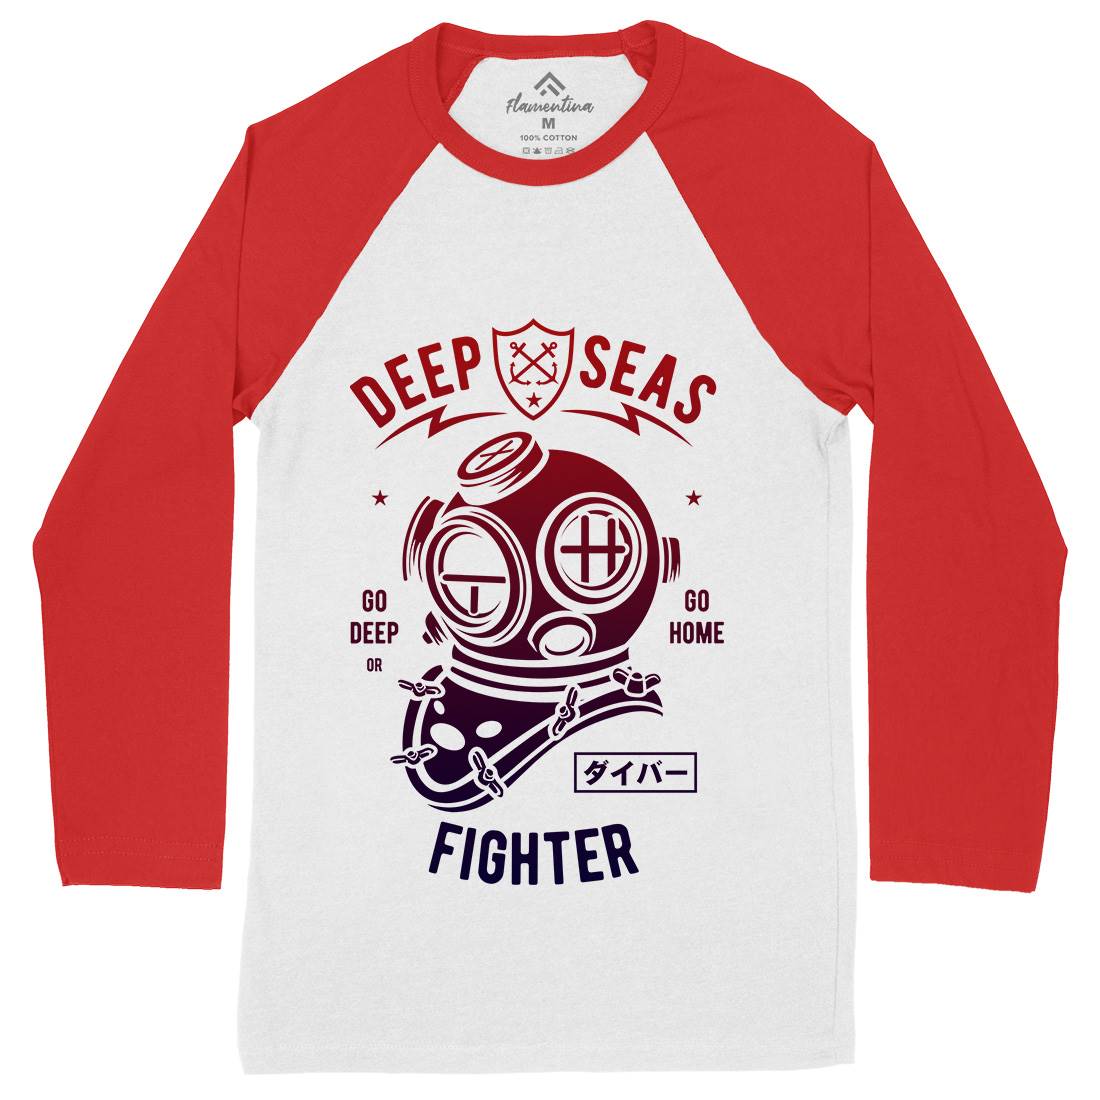 Deep Seas Fighter Mens Long Sleeve Baseball T-Shirt Navy A223